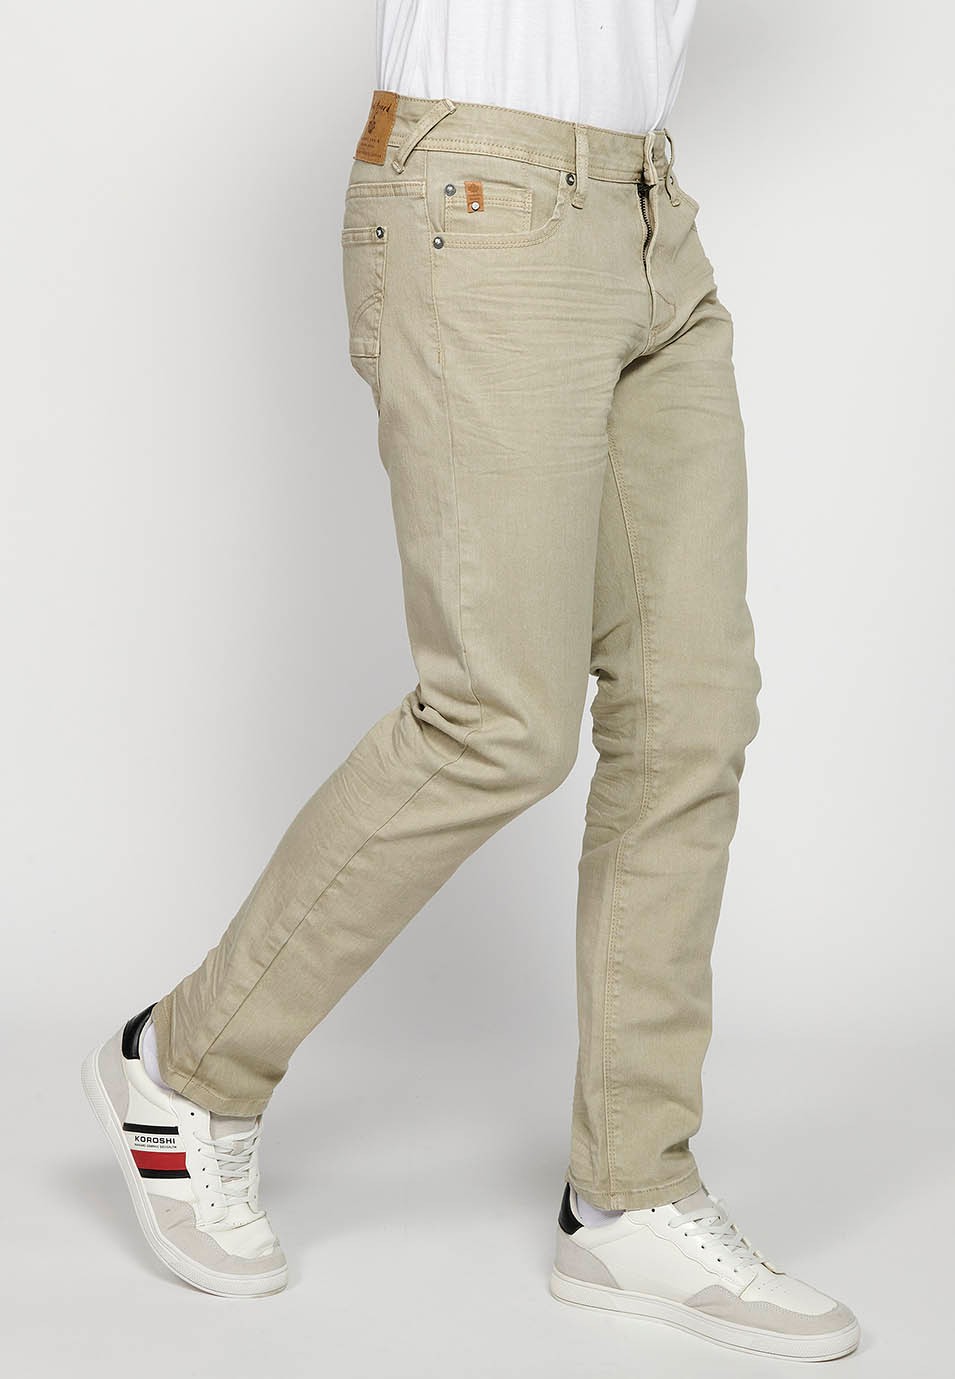 Pantalon long droit coupe classique avec fermeture sur le devant avec fermeture éclair et bouton avec cinq poches, une poche en couleur pierre pour homme 2